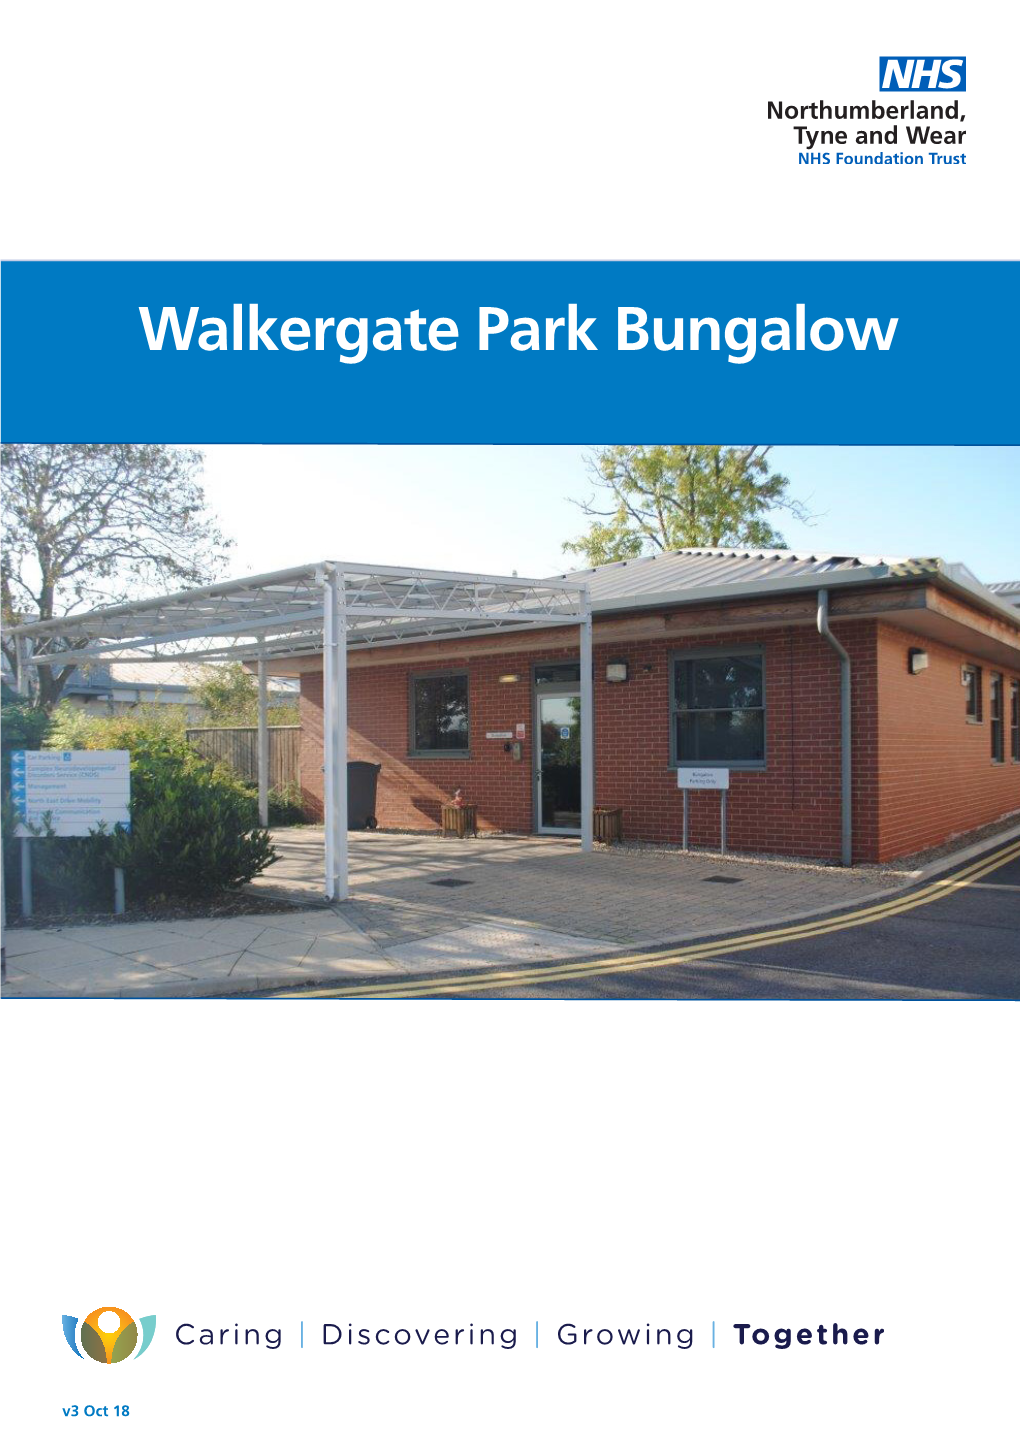 Walkergate Park Bungalow